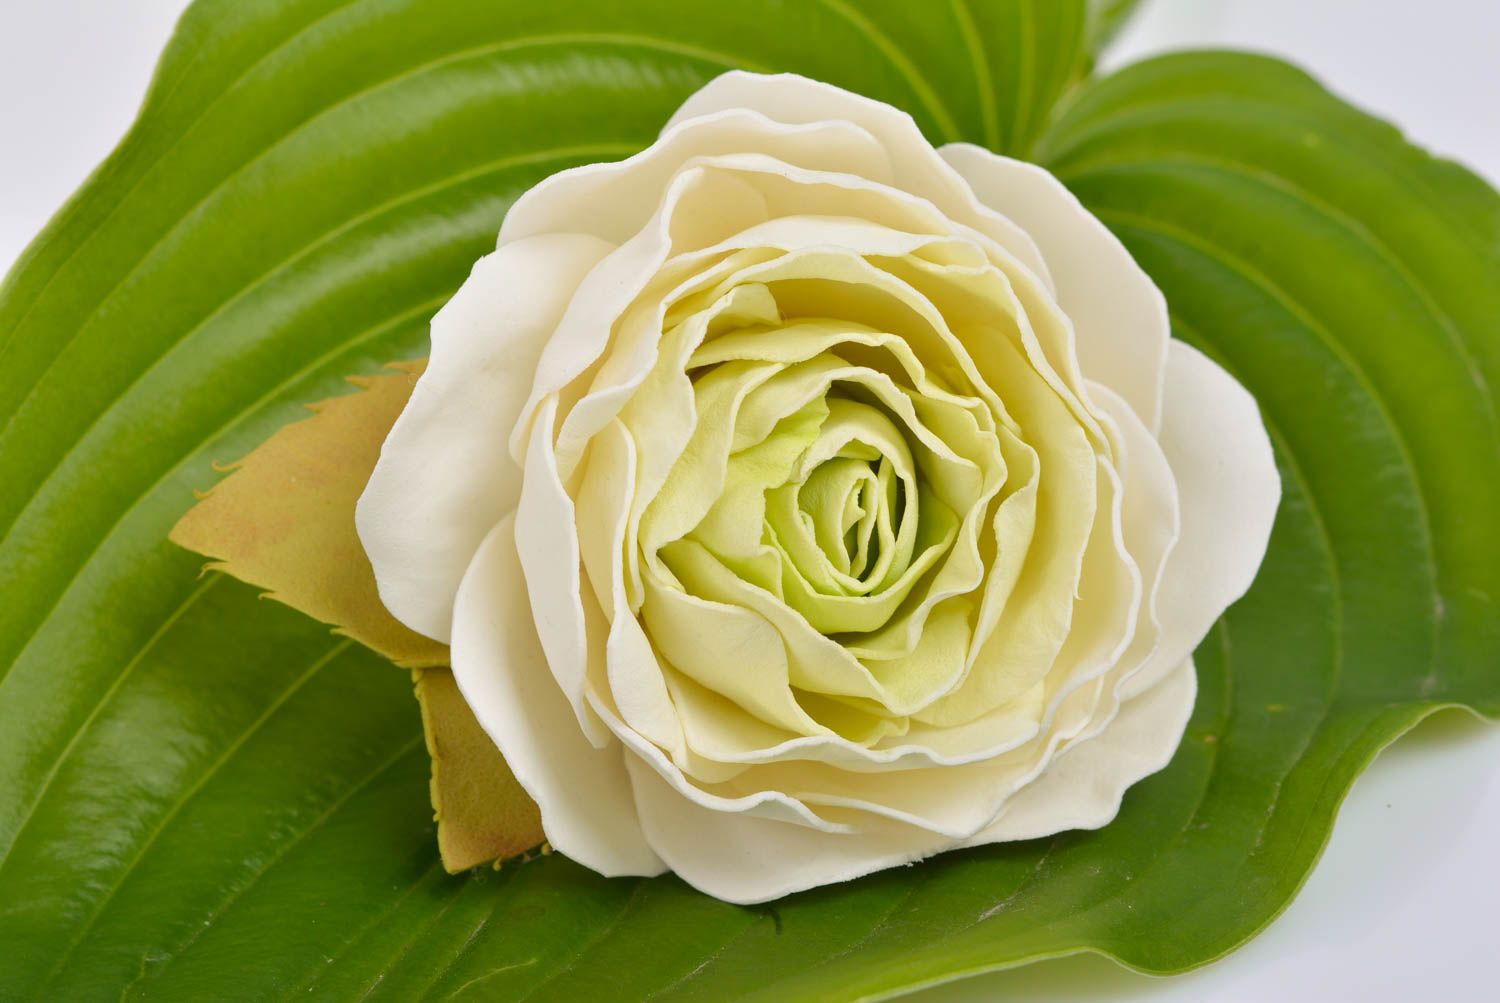 Резинка для волос с цветком розы из фоамирана большая пышная ручной работы фото 1